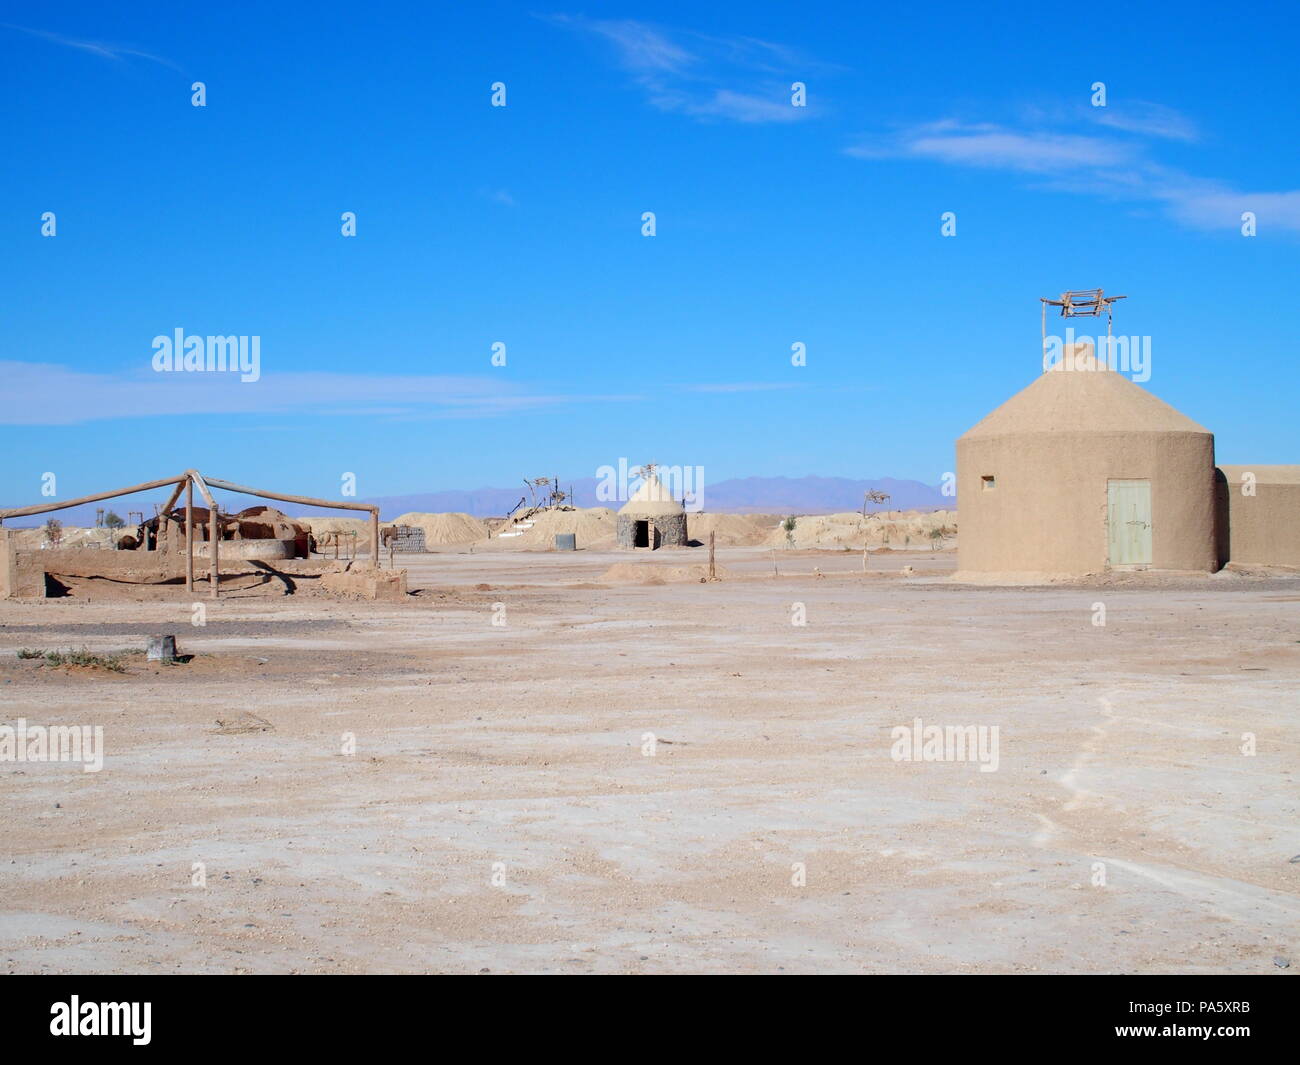 Wasser und Gebäuden von Ketthara an afrikanischen sandige Wüste Sahara Landschaften in der Nähe von Erfoud in Marokko mit klaren blauen Himmel in 2017 kalten sonnigen Winte Stockfoto